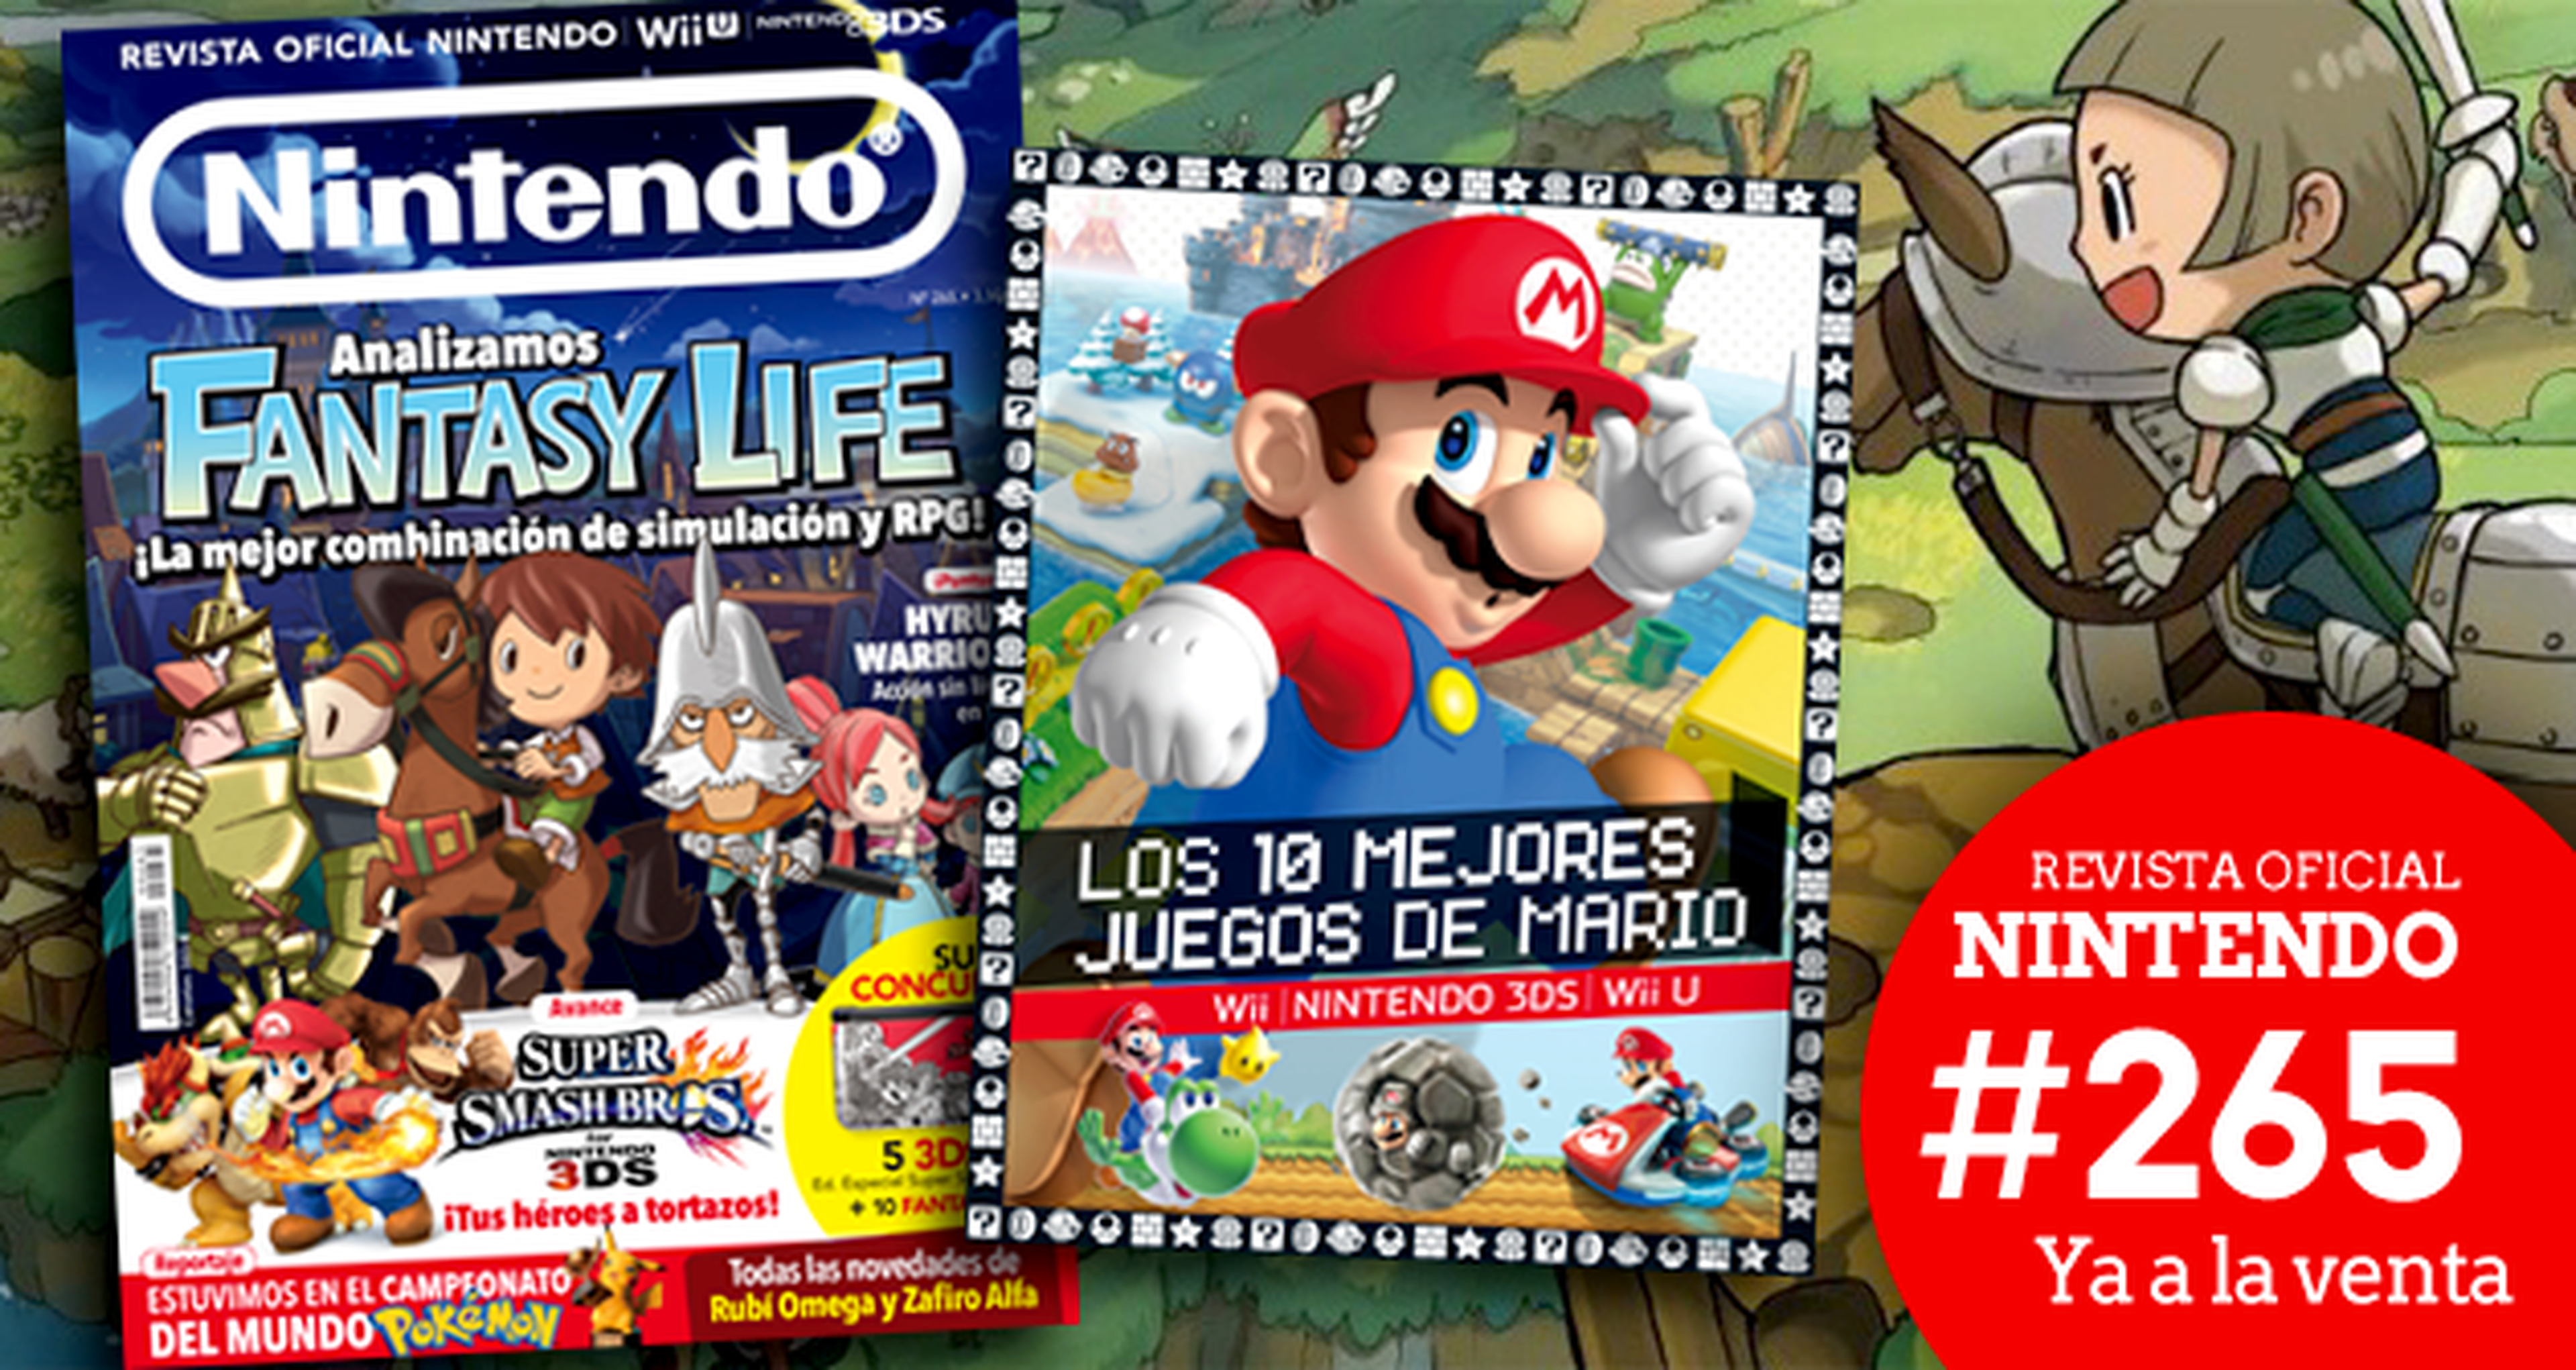 Revista Oficial Nintendo 265 ya a la venta